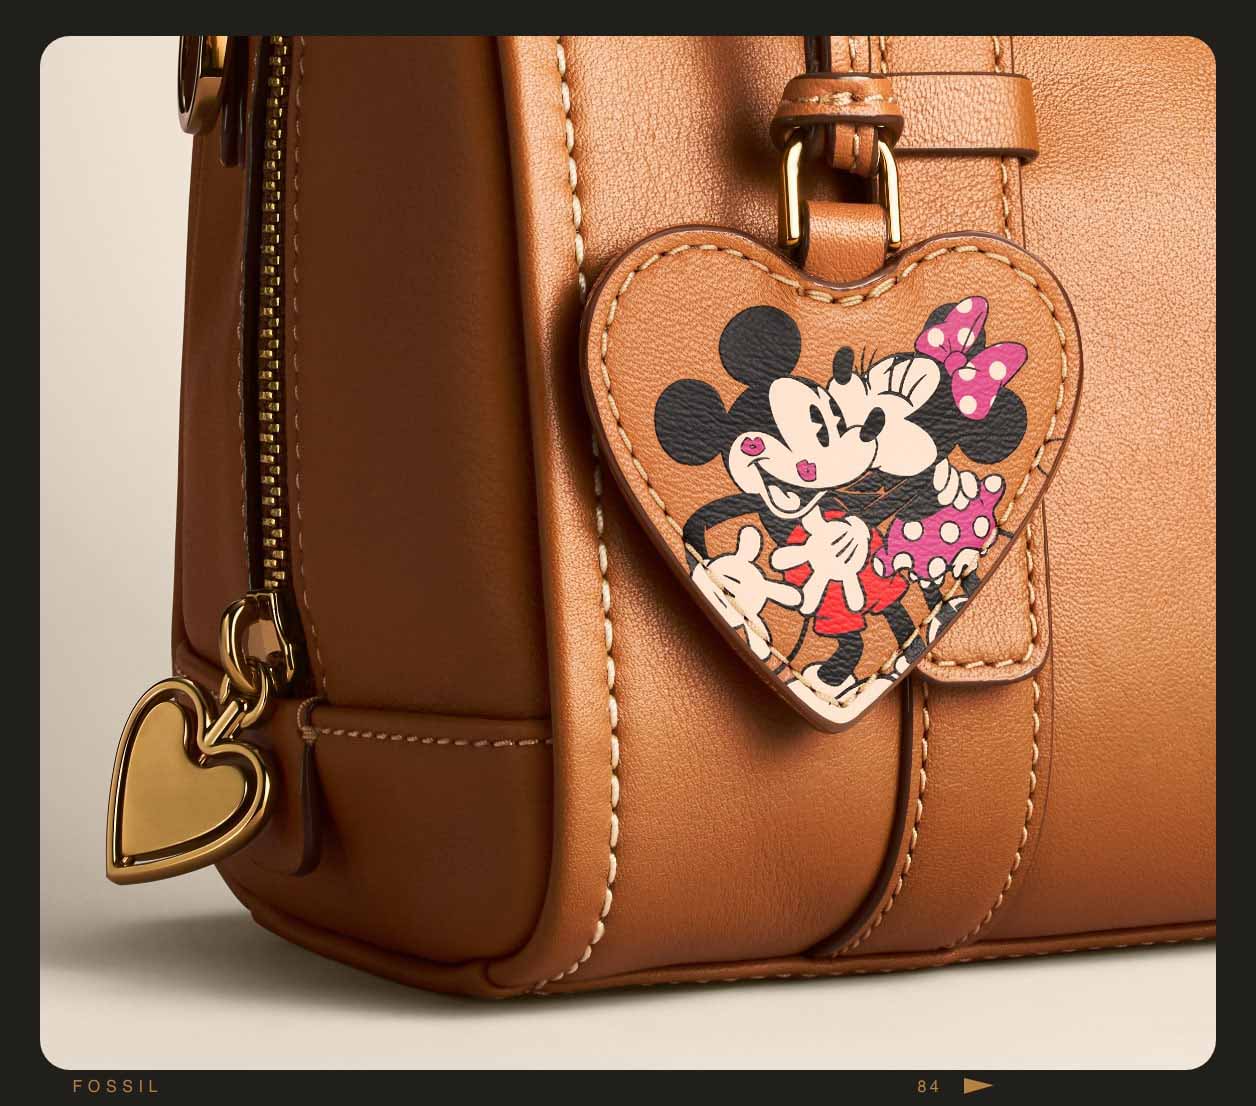 Primer plano del minibolso satchel Carlie de piel marrón, que luce un estampado repujado de Mickey Mouse y Minnie Mouse.